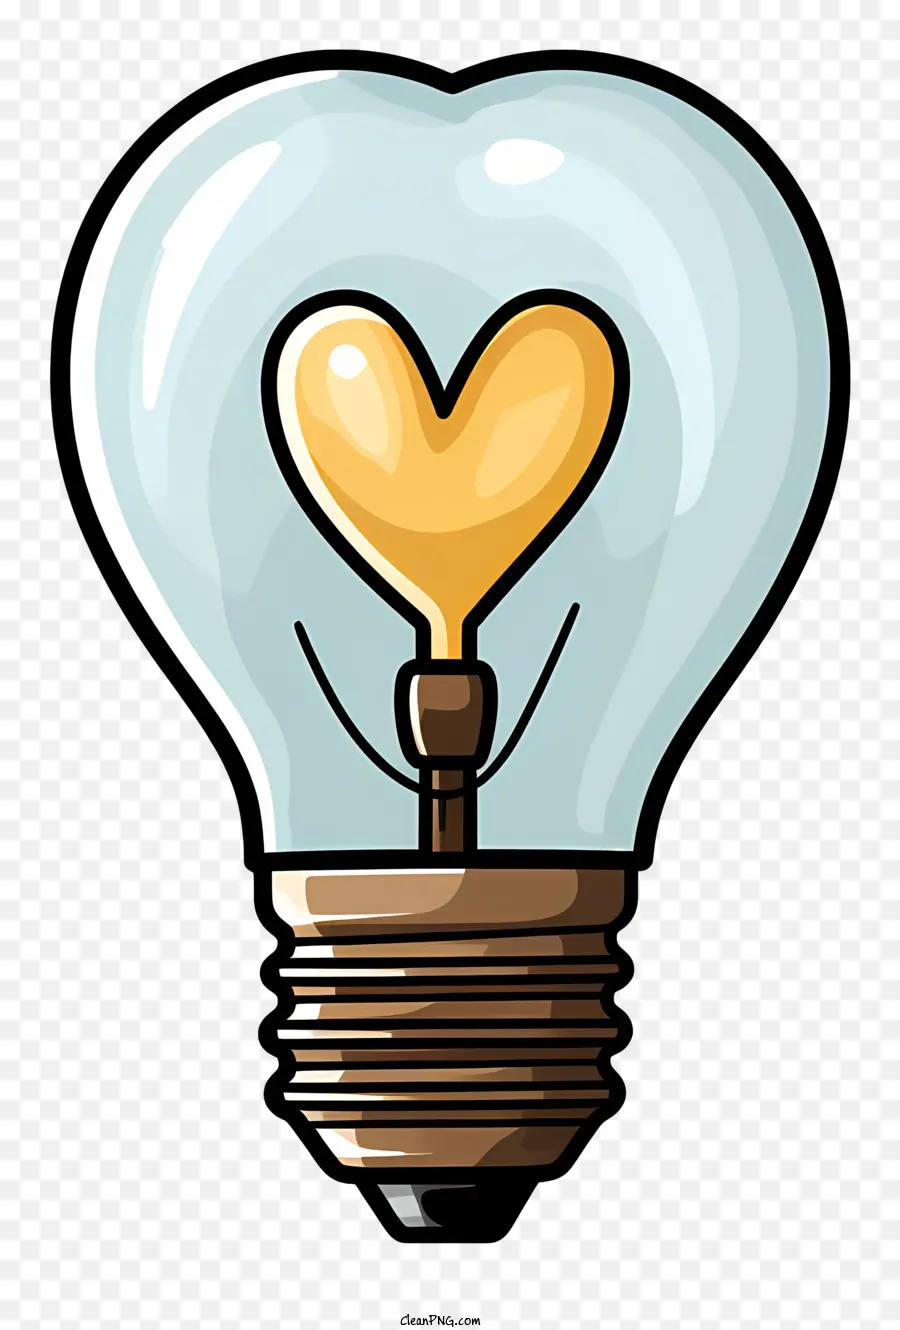 lampadina - Simbolo iconico dell'amore: lampadina a forma di cuore